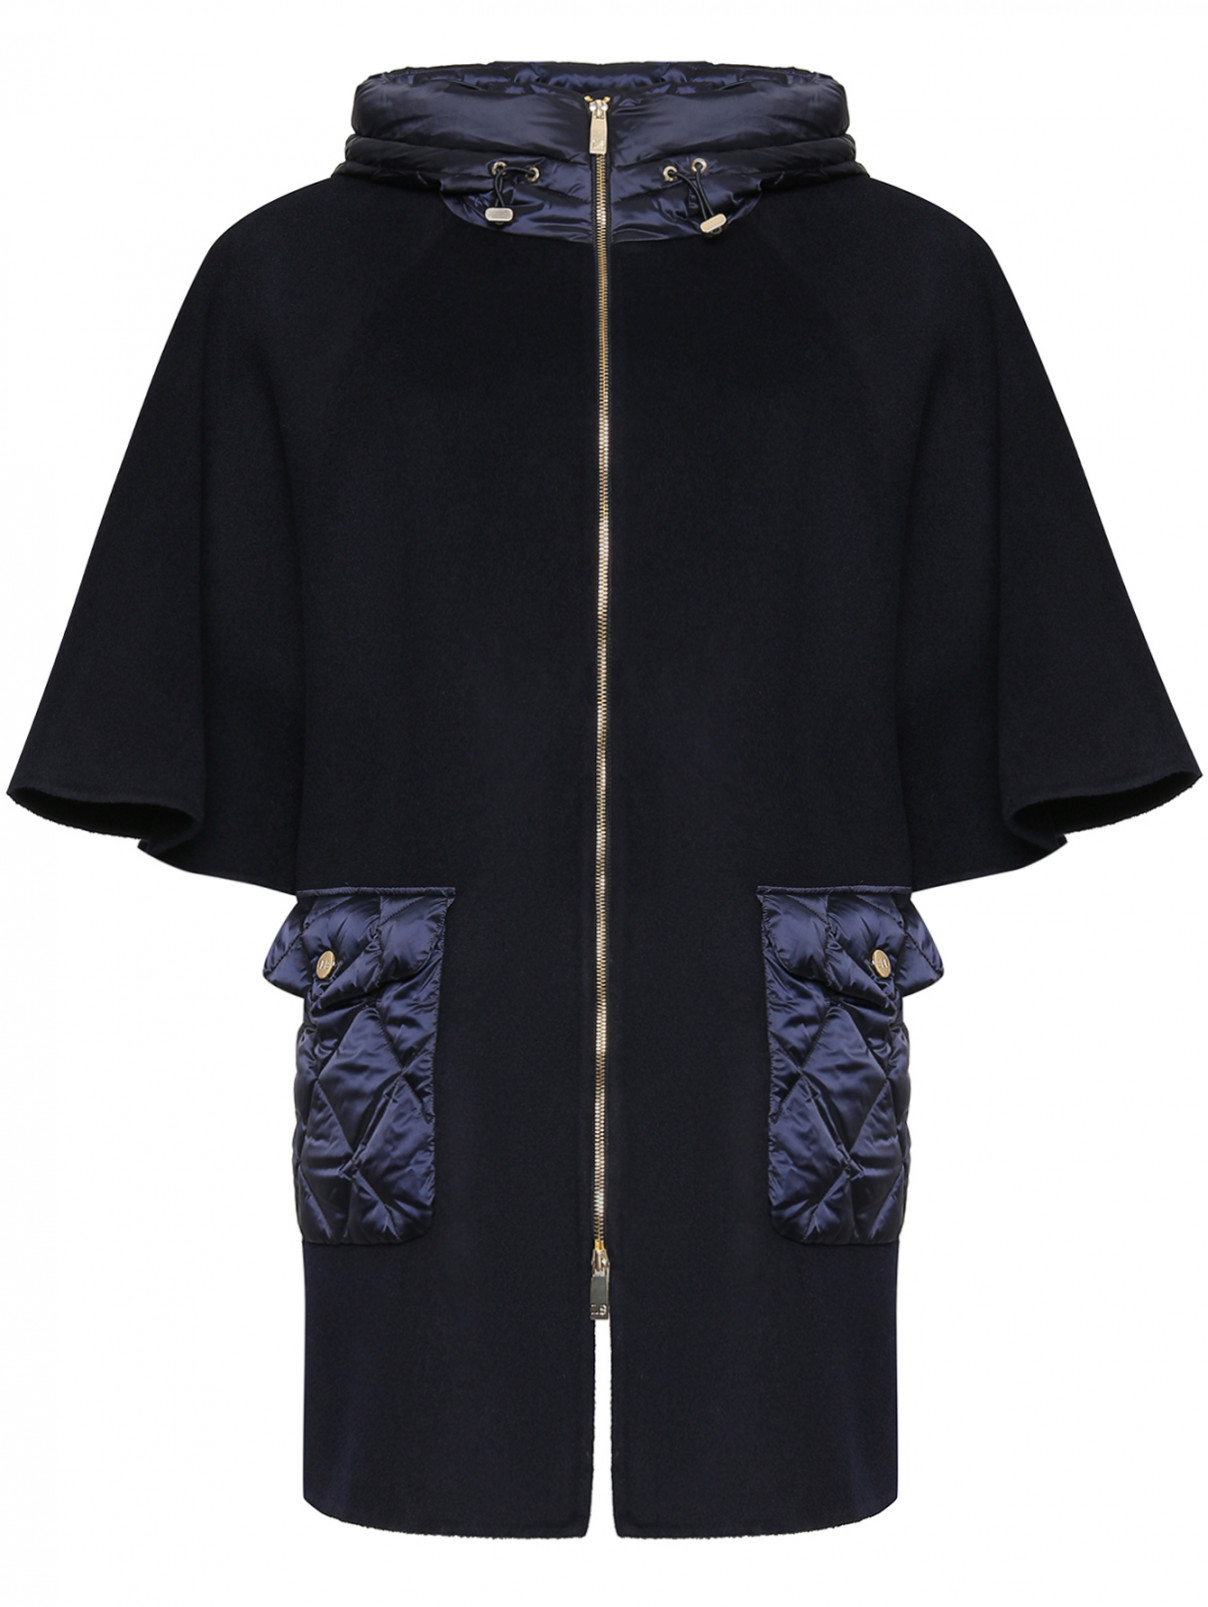 Пальто из шерсти с капюшоном Luisa Spagnoli  –  Общий вид  – Цвет:  Синий